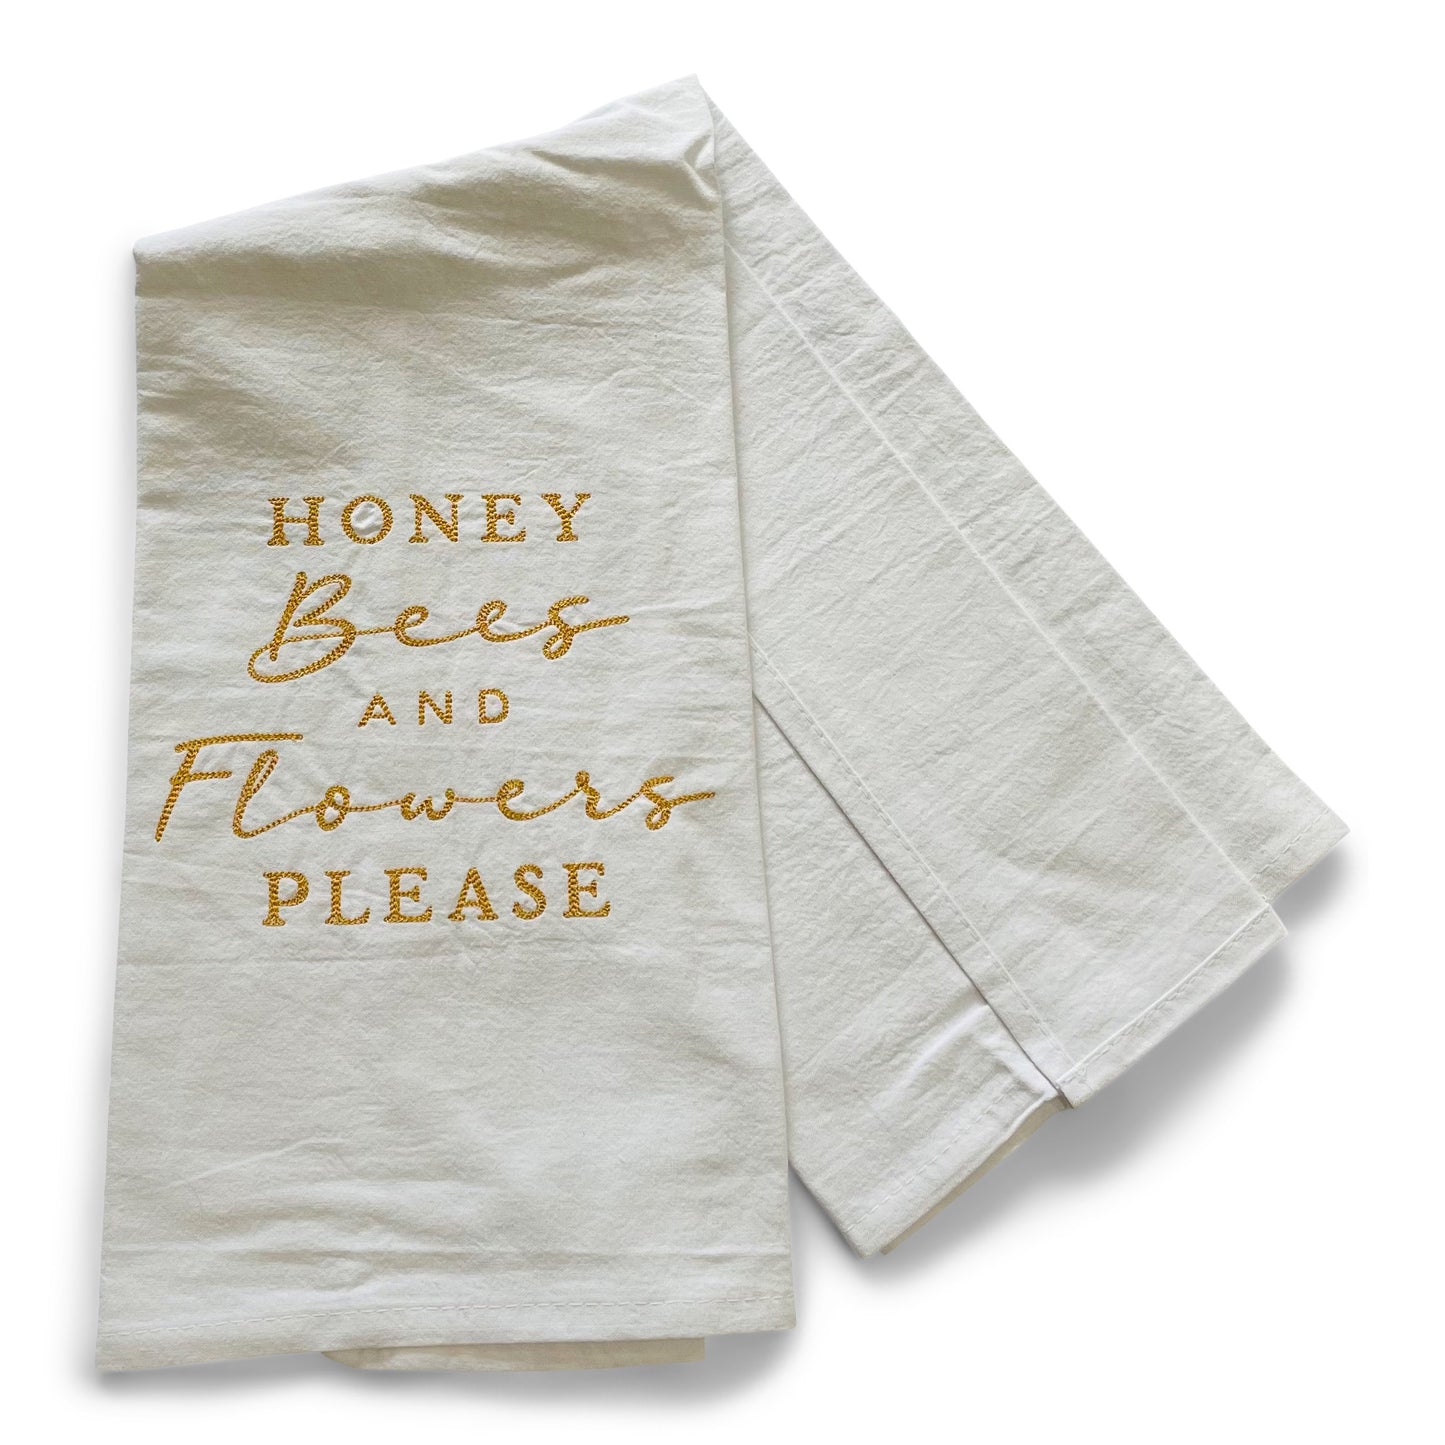 Honey Bees & Flowers Please Towel